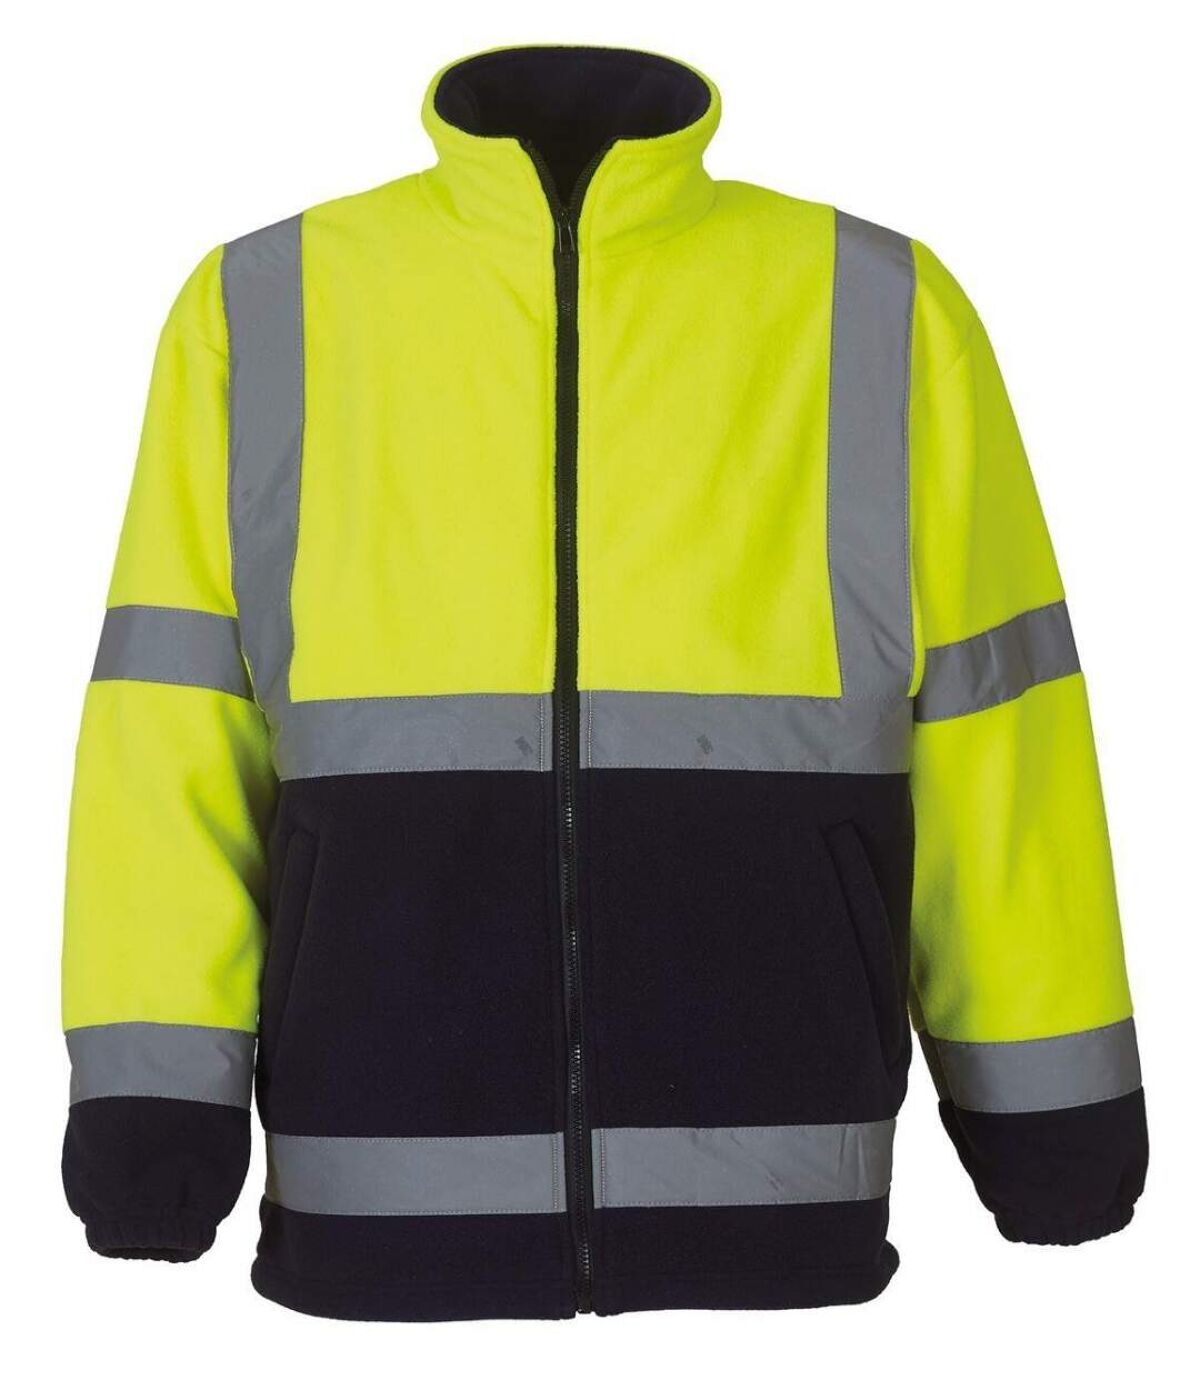 Gilet veste polaire de sécurité haute visibilité JAUNE fluo (bas bleu) - HVK08